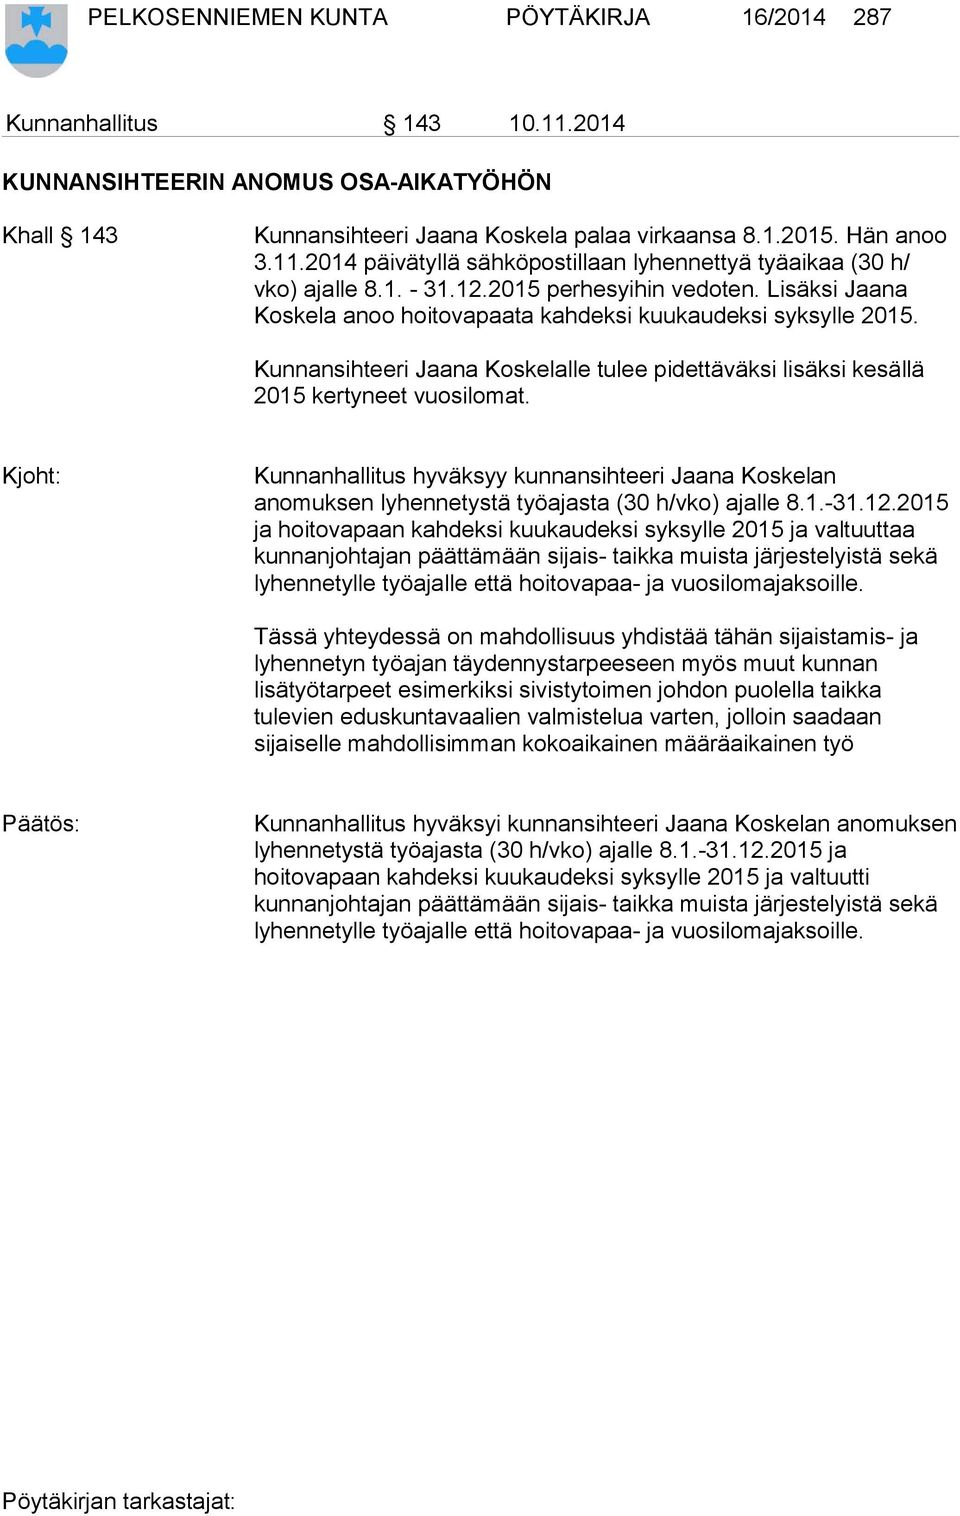 Kunnansihteeri Jaana Koskelalle tulee pidettäväksi lisäksi kesällä 2015 kertyneet vuosilomat.